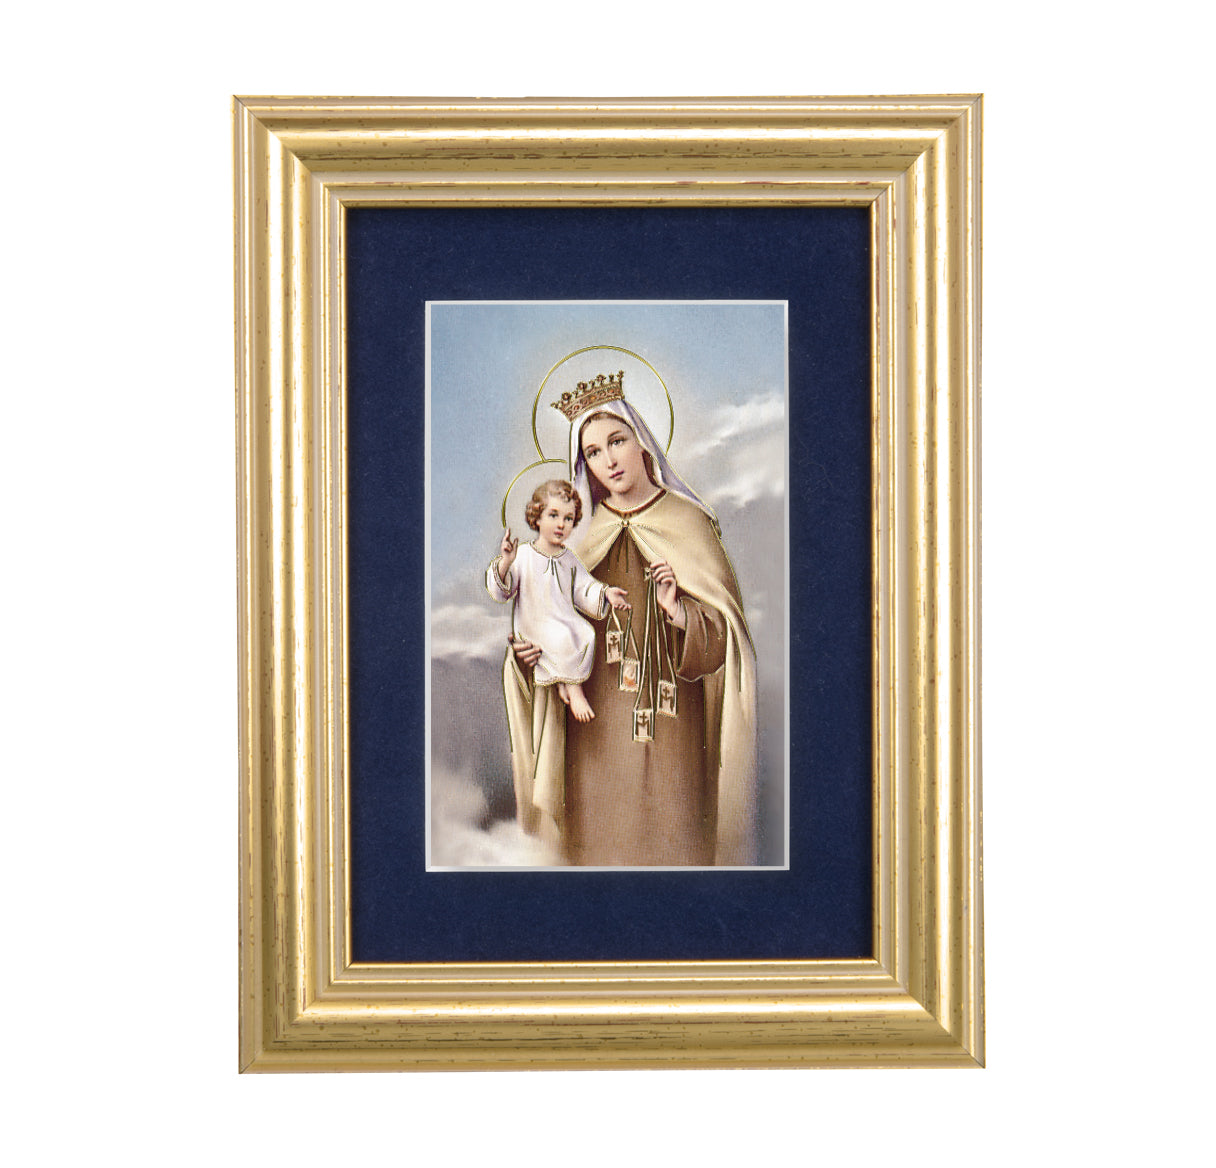 Our Lady of Mount Carmel Gold Framed Art with Blue Velvet Matting